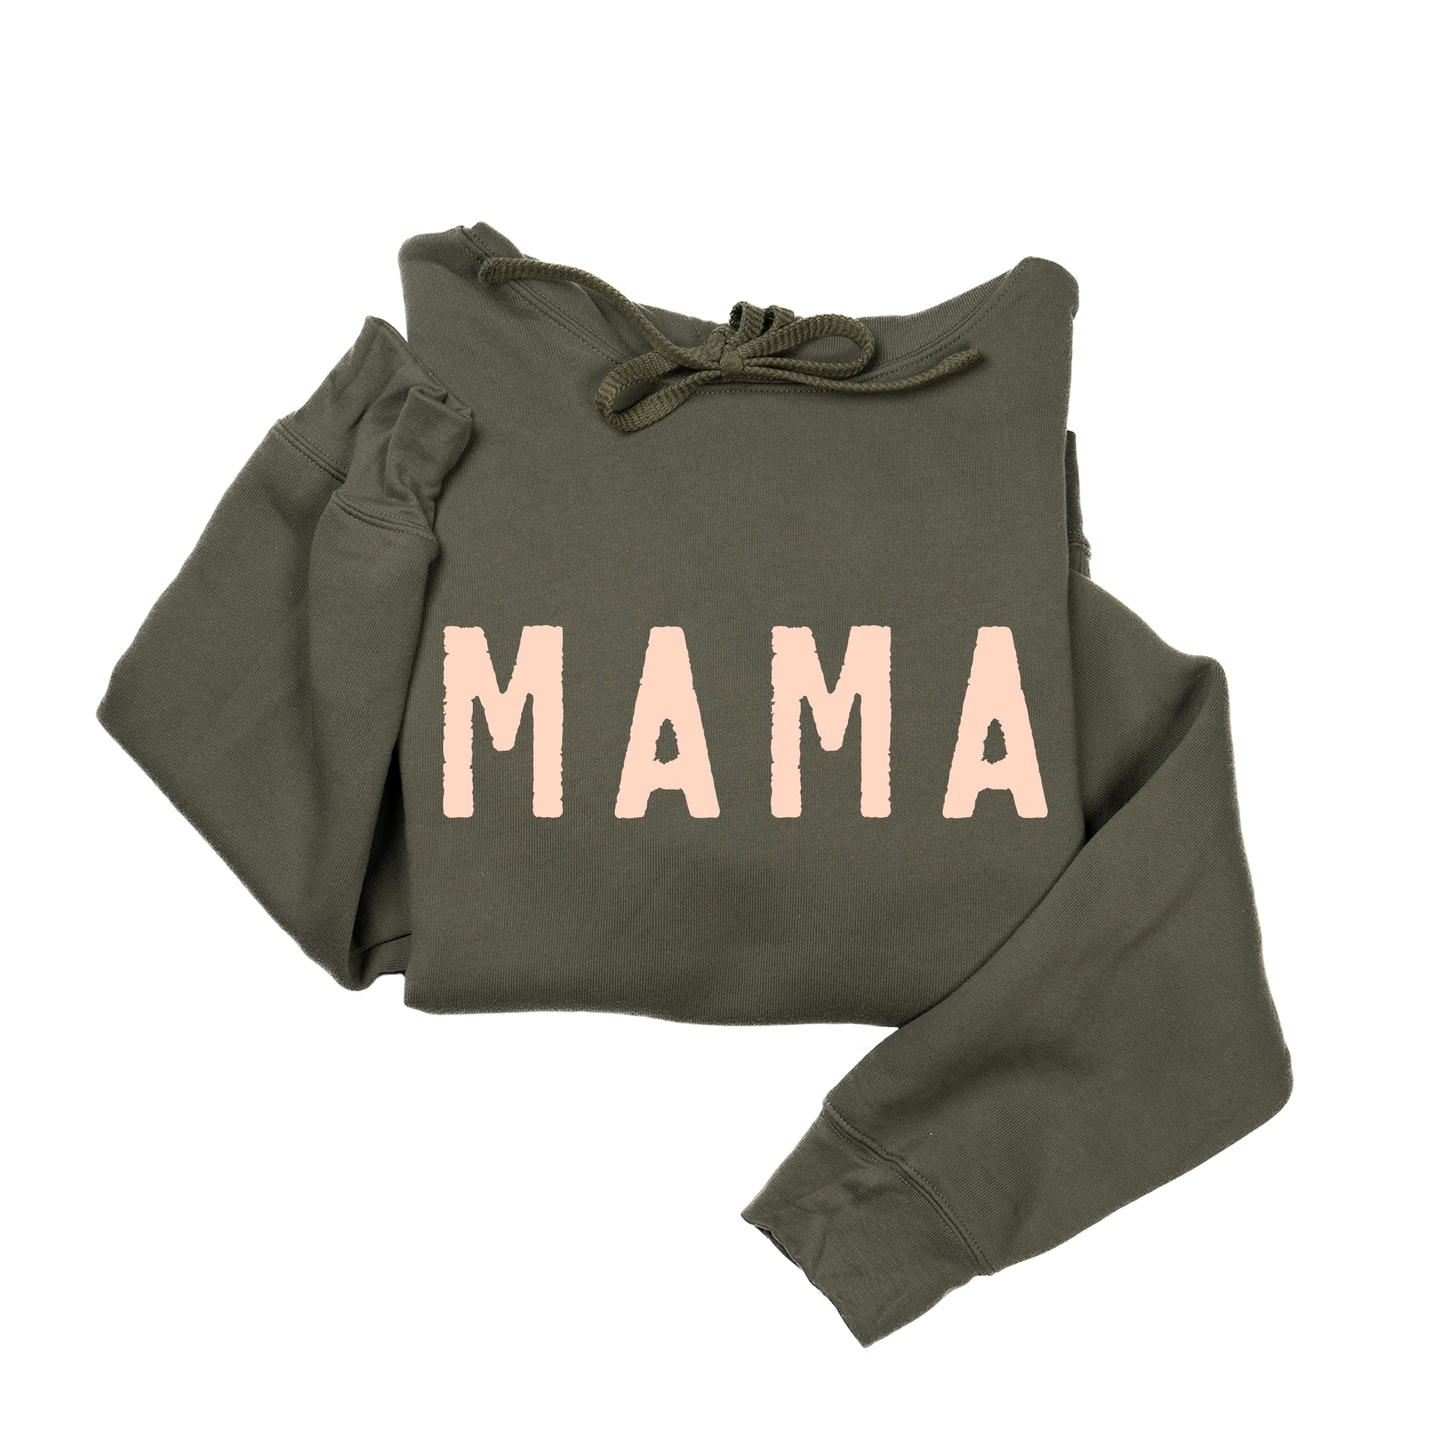 Mama (Rough, Peach) - Hoodie (Military Green)